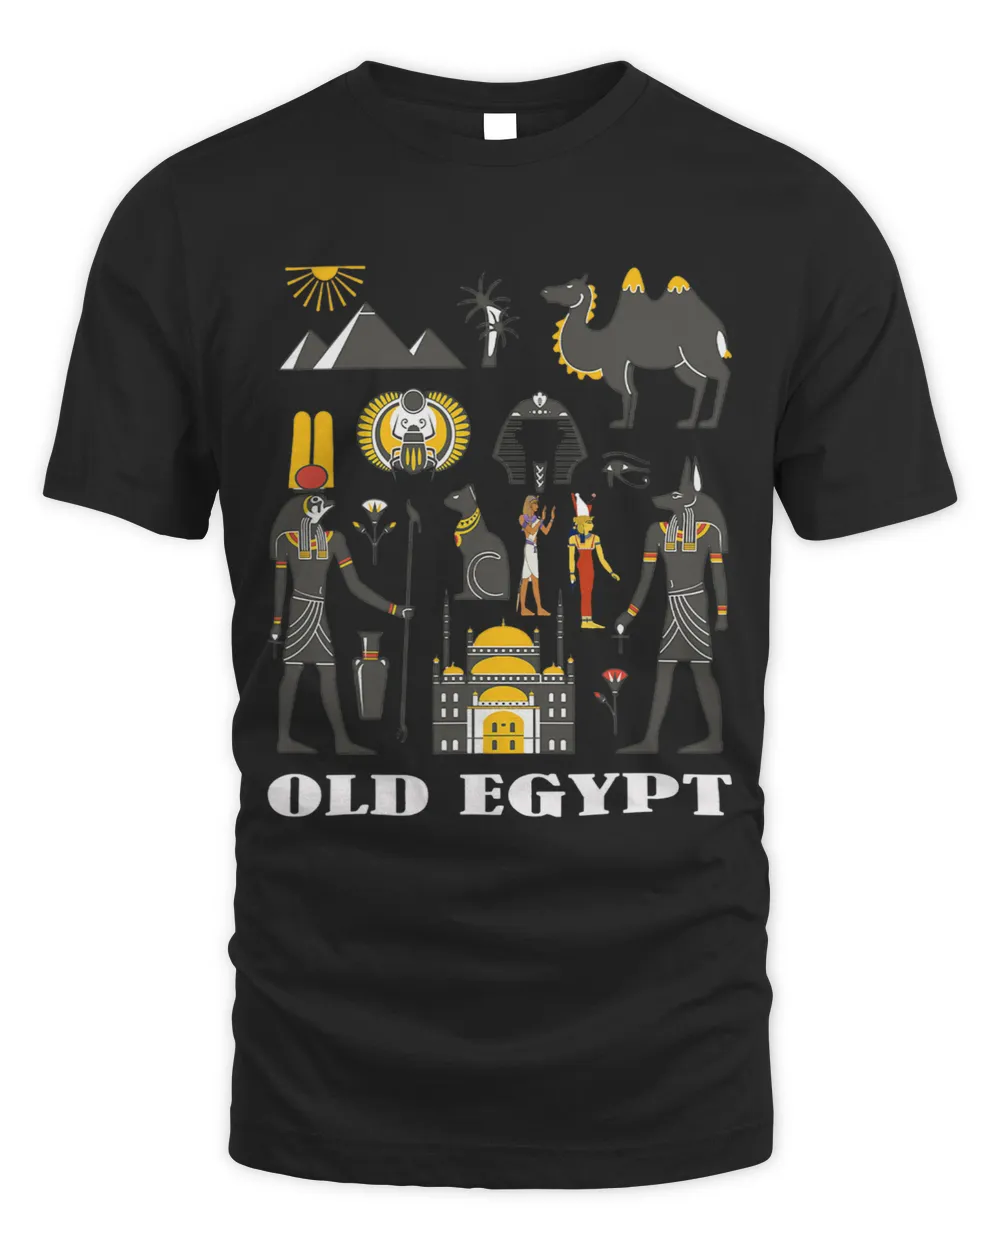 Ancient Egyptian Pharaohs Deities family bday Xmas gift